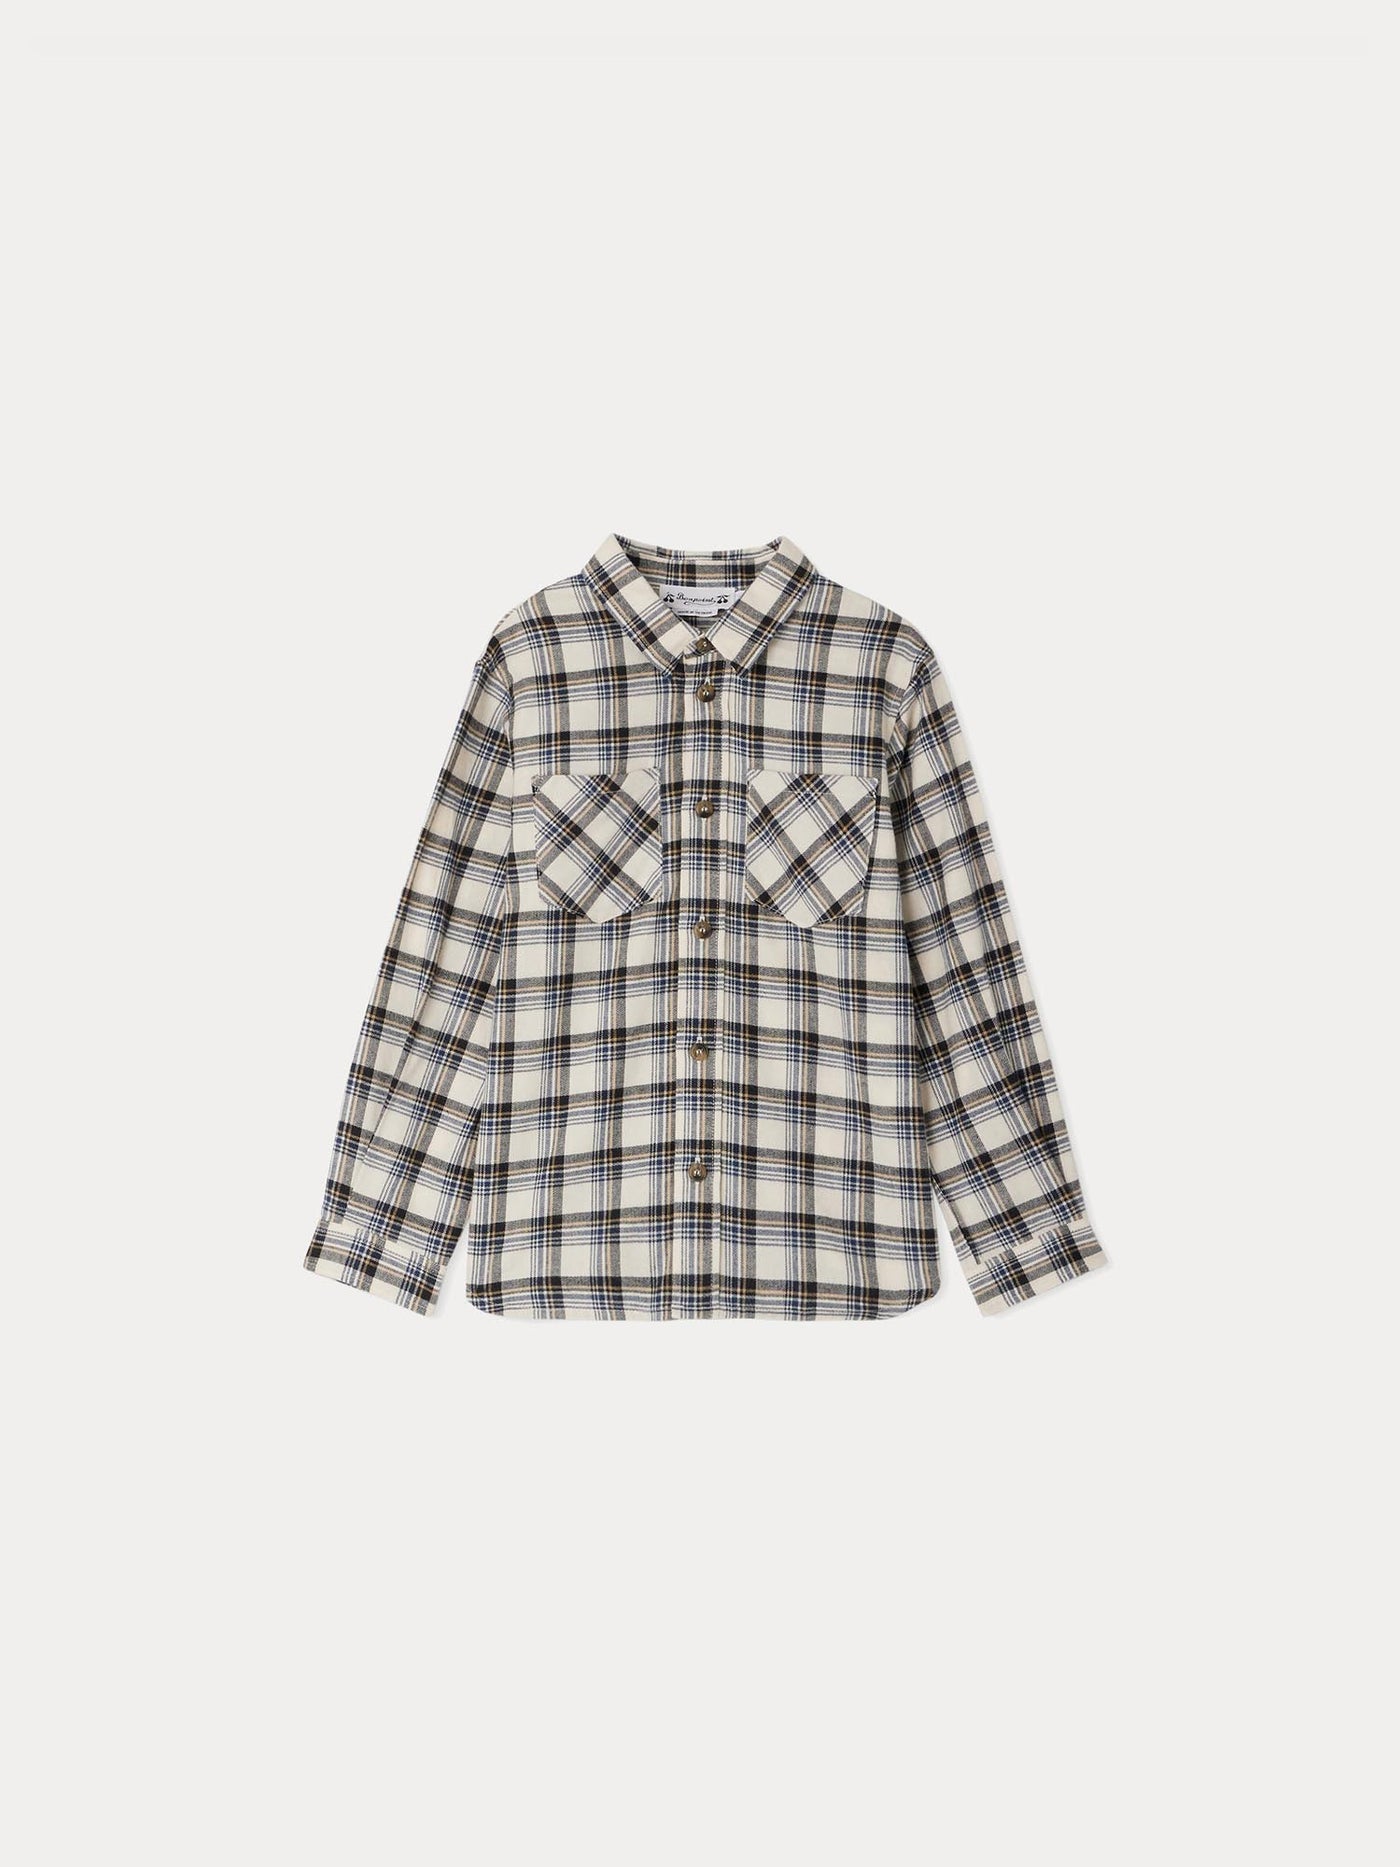 Altman checkered shirt